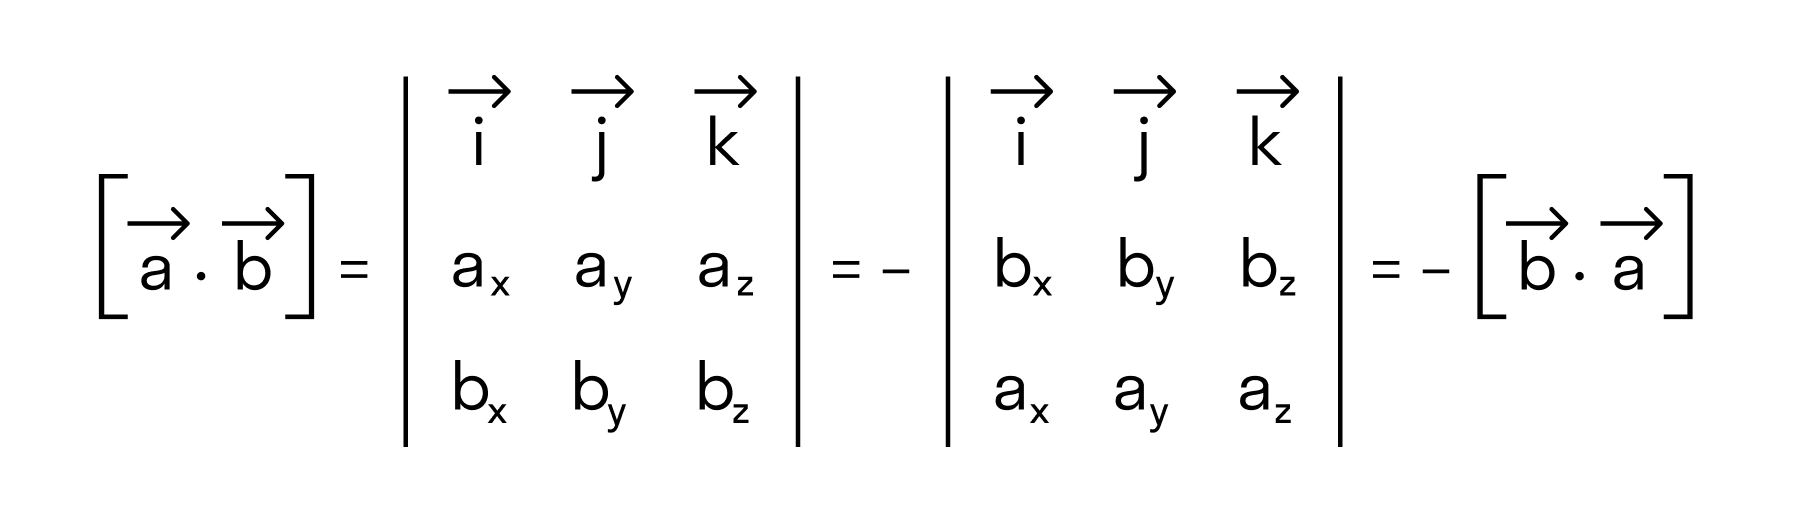 значение определителя матрицы изменяется на противоположное, если переставить местами две строки